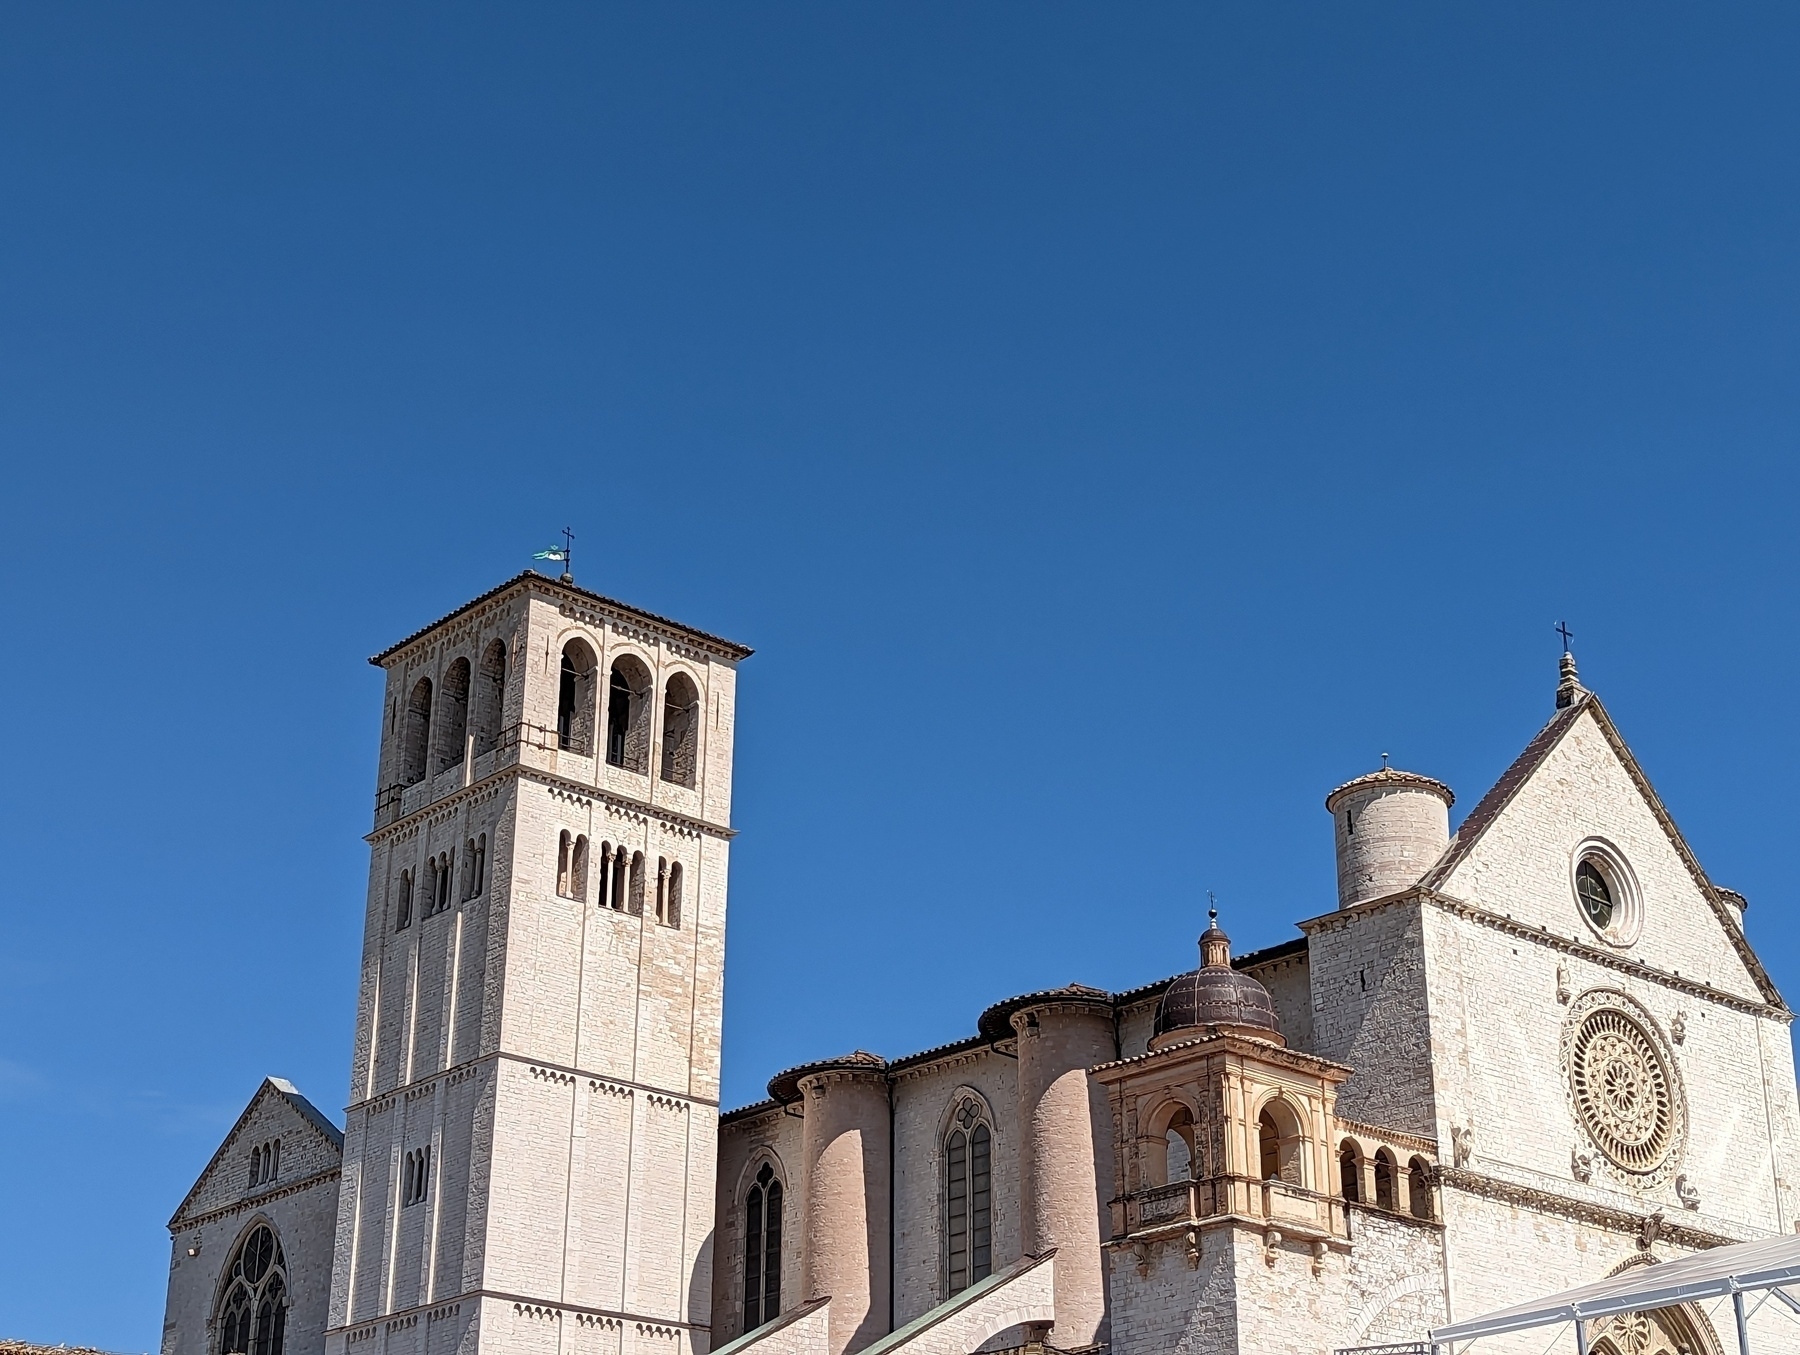 White limestone church & bell tower agains deep blue sky